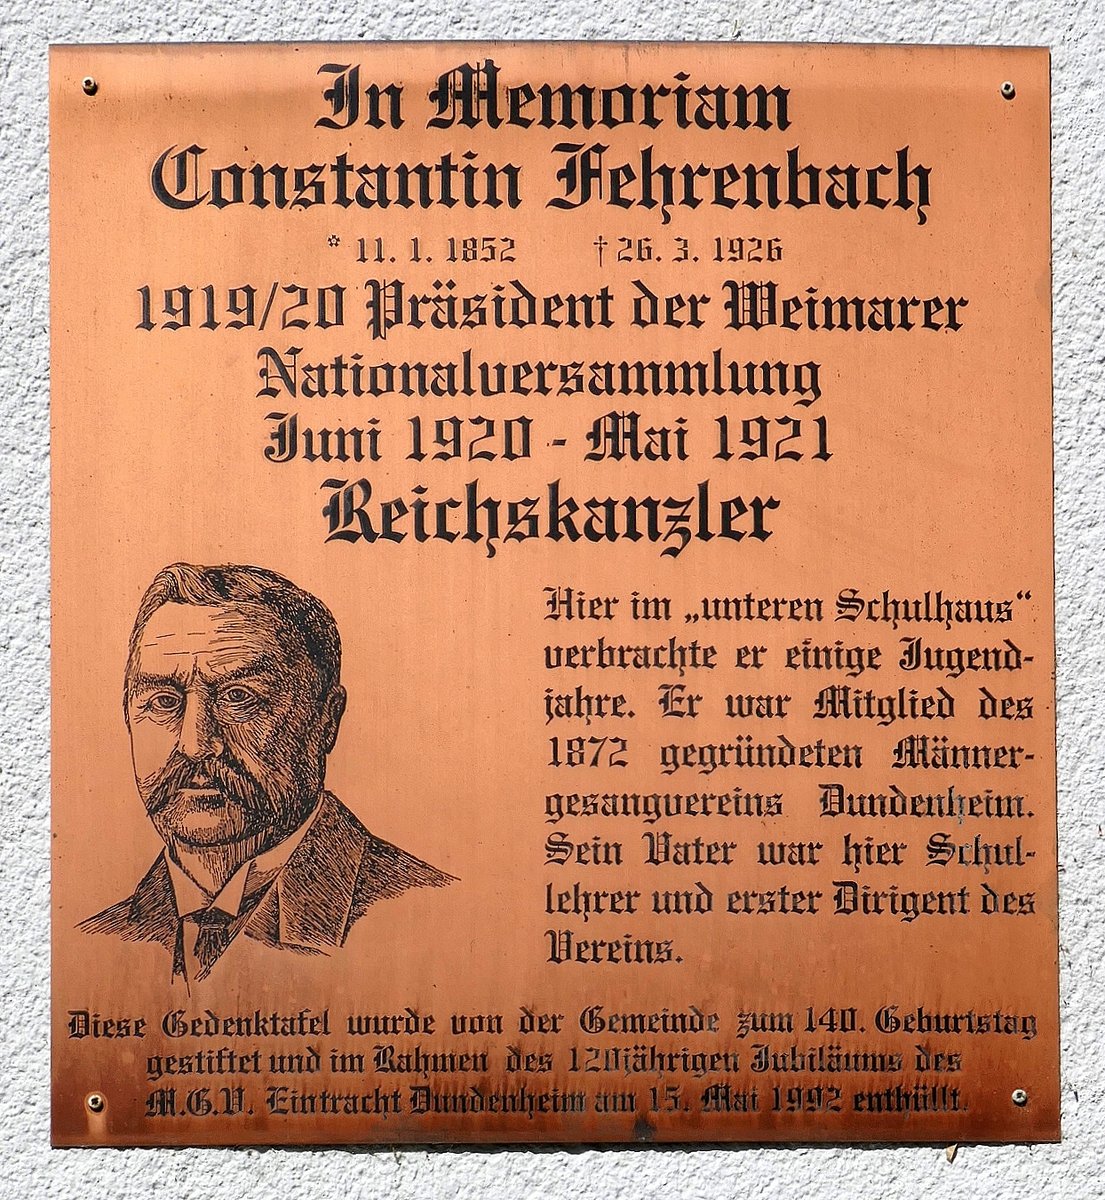 Dundenheim, Gedenktafel von 1992 am Rathaus, fr Constantin Fehrenbach, Reichskanzler von 1920-21, verbrachte hier einige Jugendjahre, April 2020